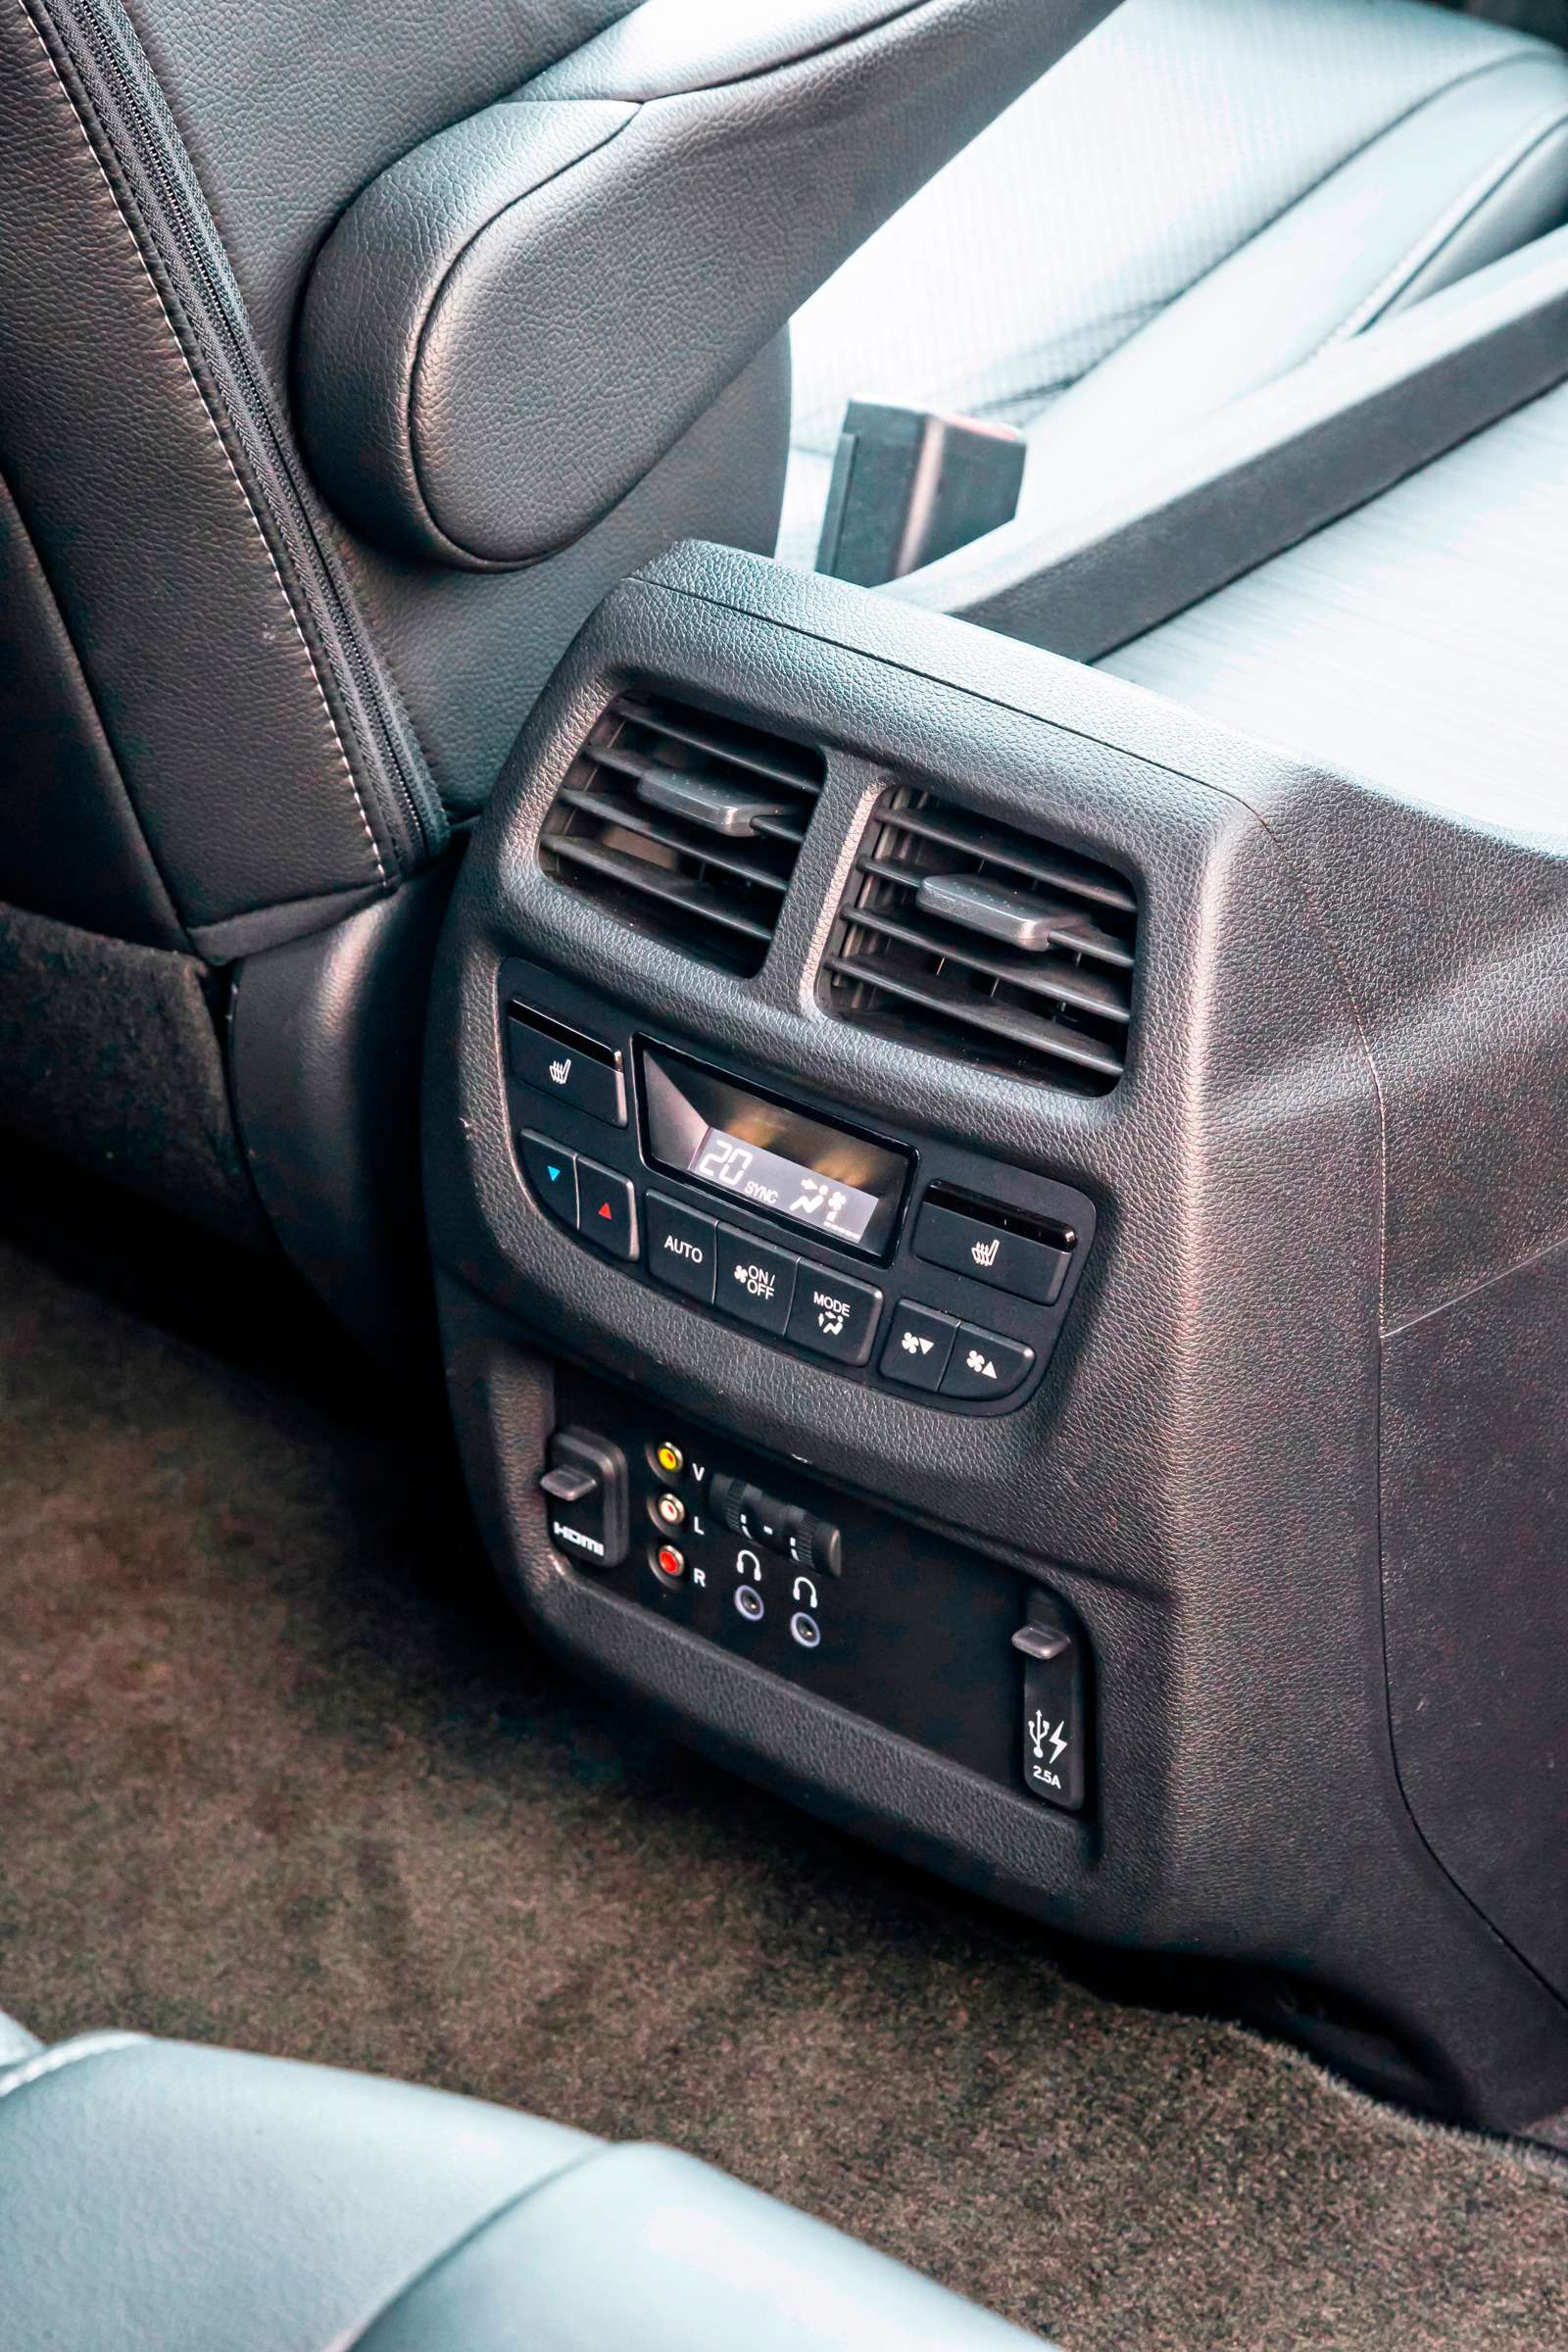 Honda Pilot. В отличие от Эксплорера, в торце туннеля есть не только два USB-порта и пульт управления микроклиматом, но и пара дефлекторов.